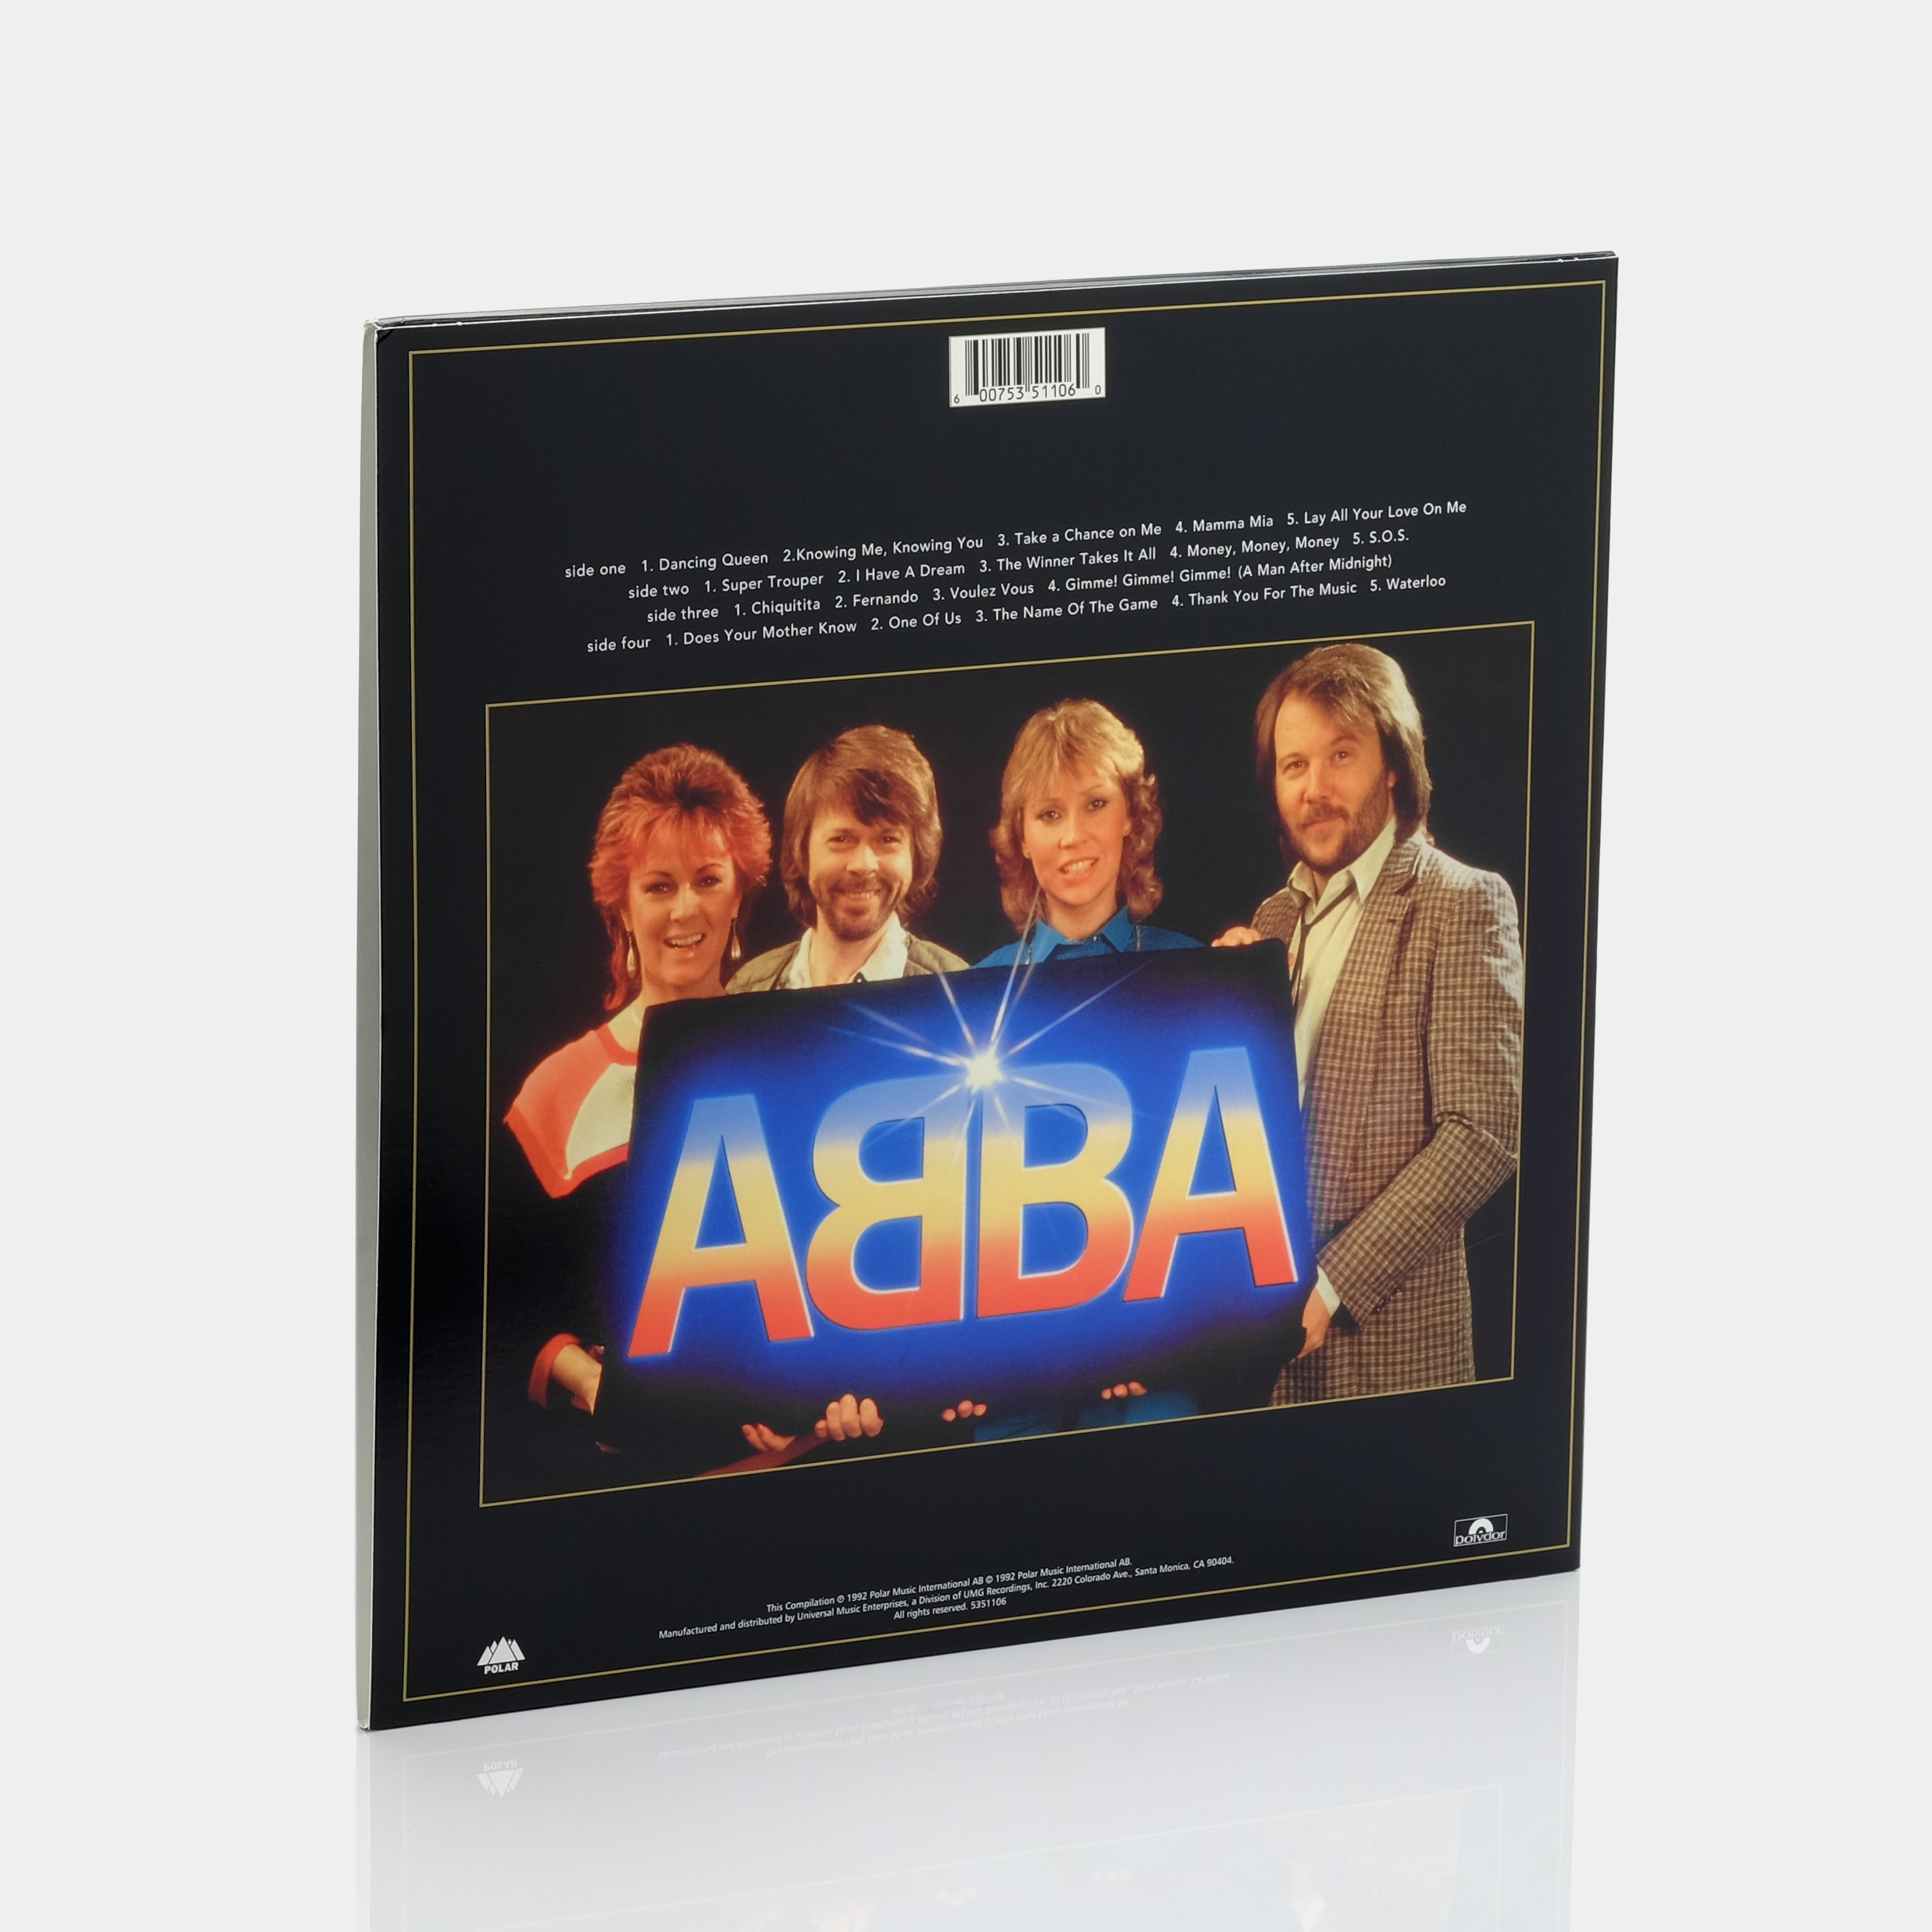 ABBA - Gold Greatest Hits 2xLP Vinyl Record